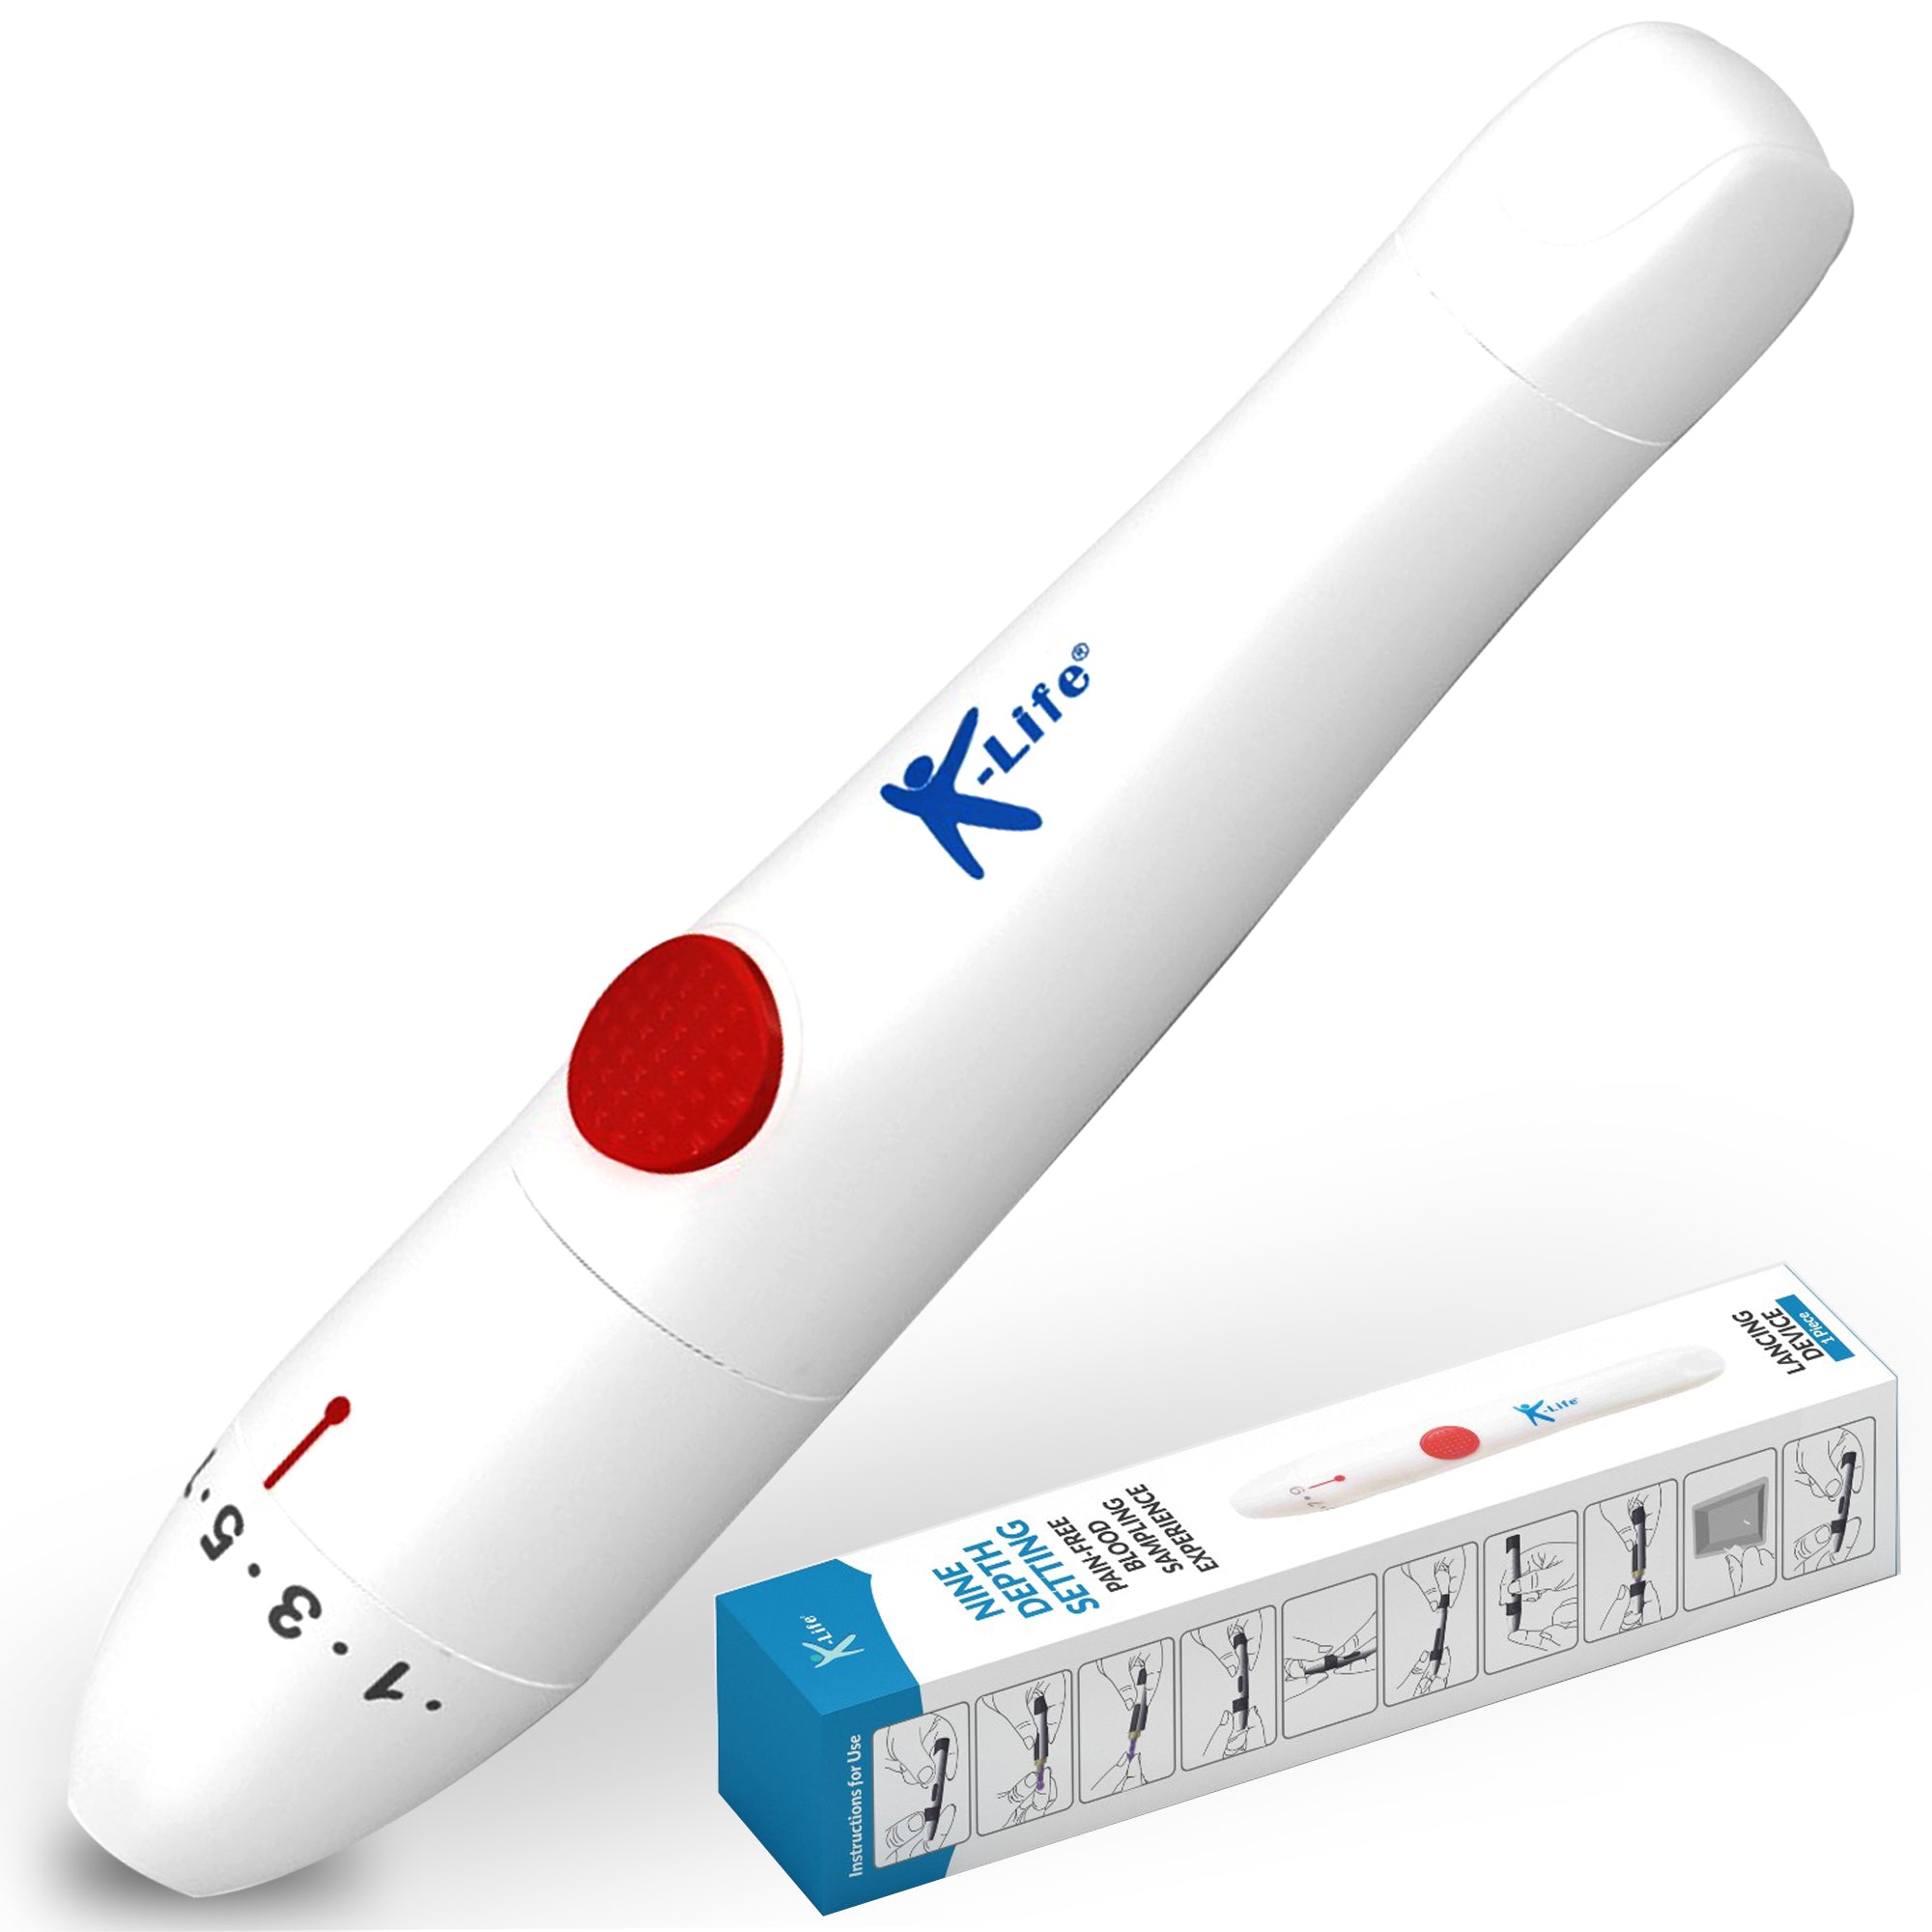 K-Life Pain-free Adjustable Lancing Device (White)